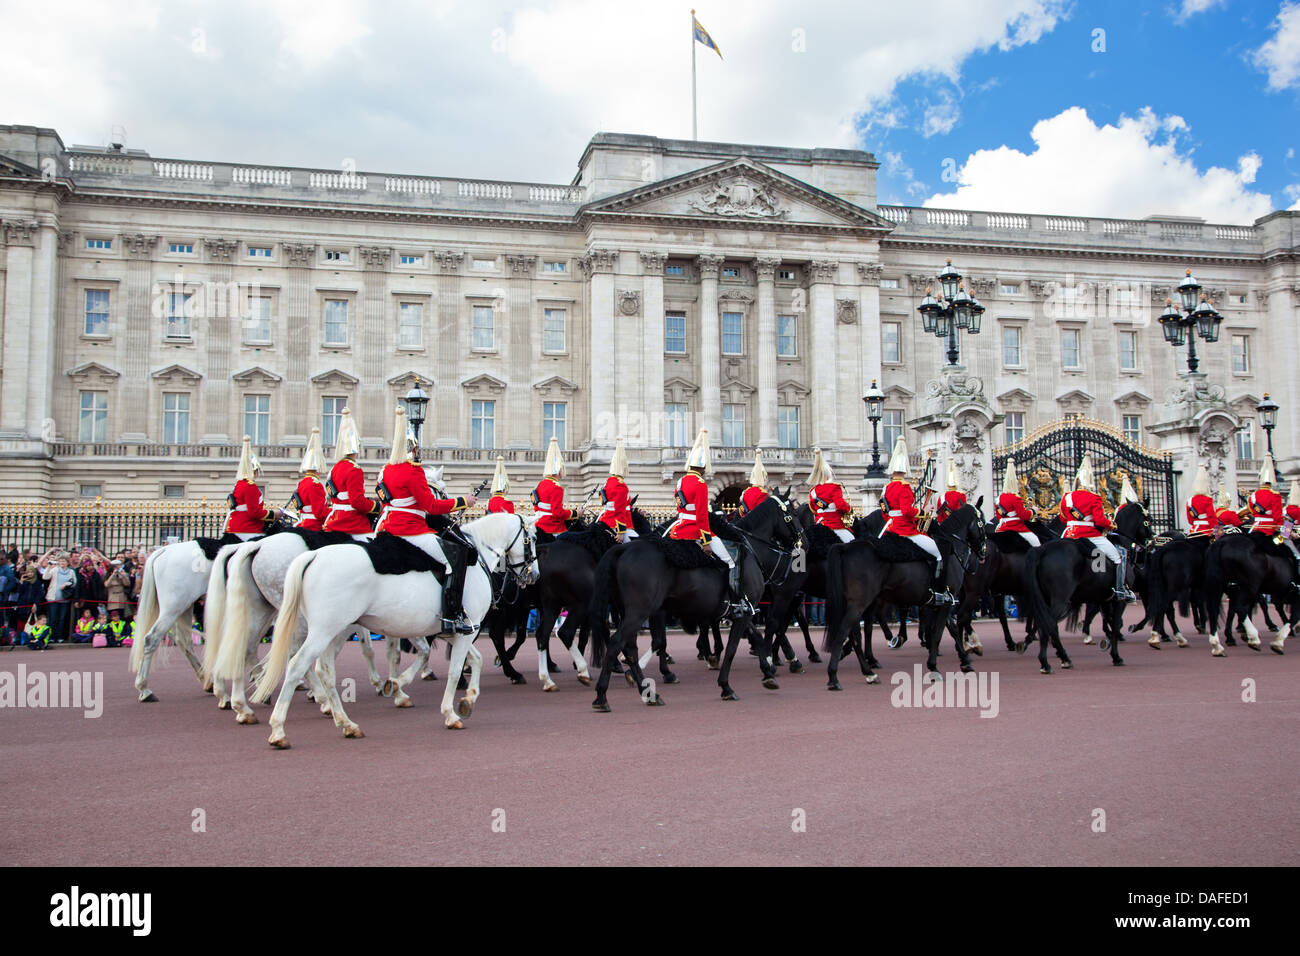 Londres - 17 mai : la garde royale à cheval équitation et effectuer le changement de la garde à Buckingham Palace le 17 mai, 2013 Banque D'Images